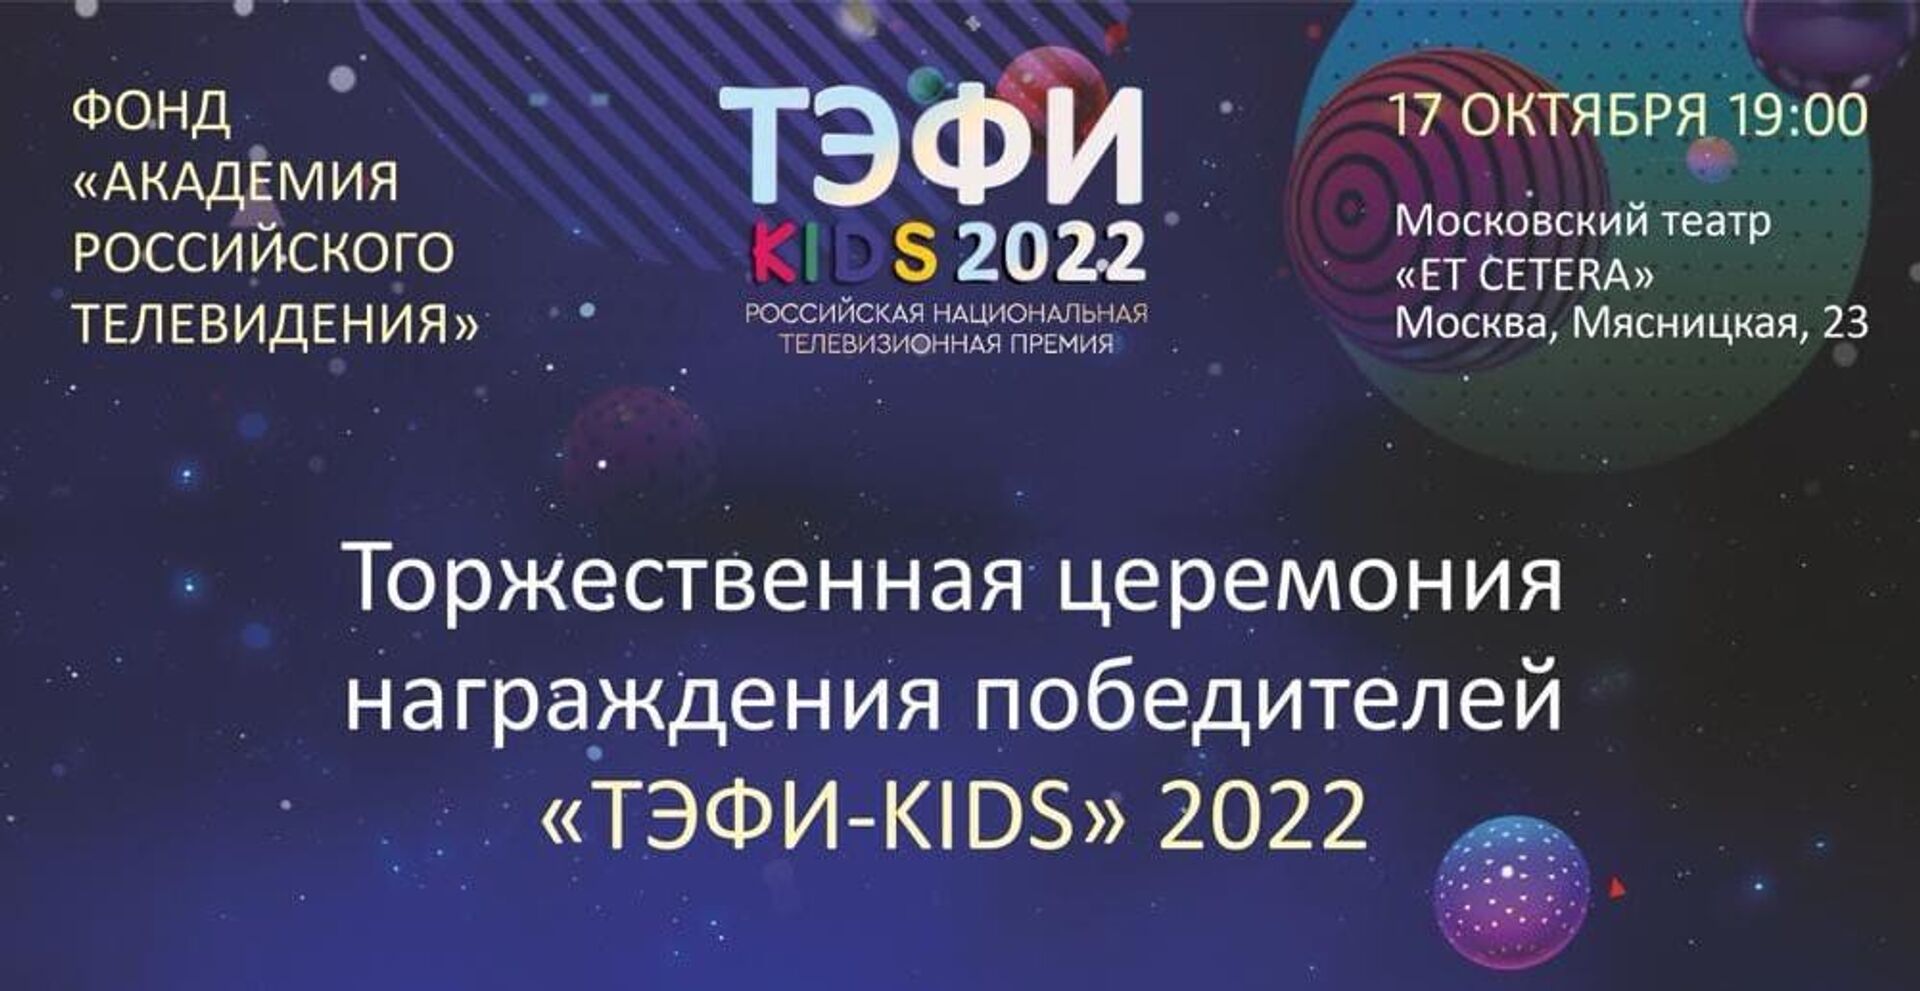 Афиша церемонии награждения победителей ТЭФИ-KIDS 2022 - РИА Новости, 1920, 14.10.2022